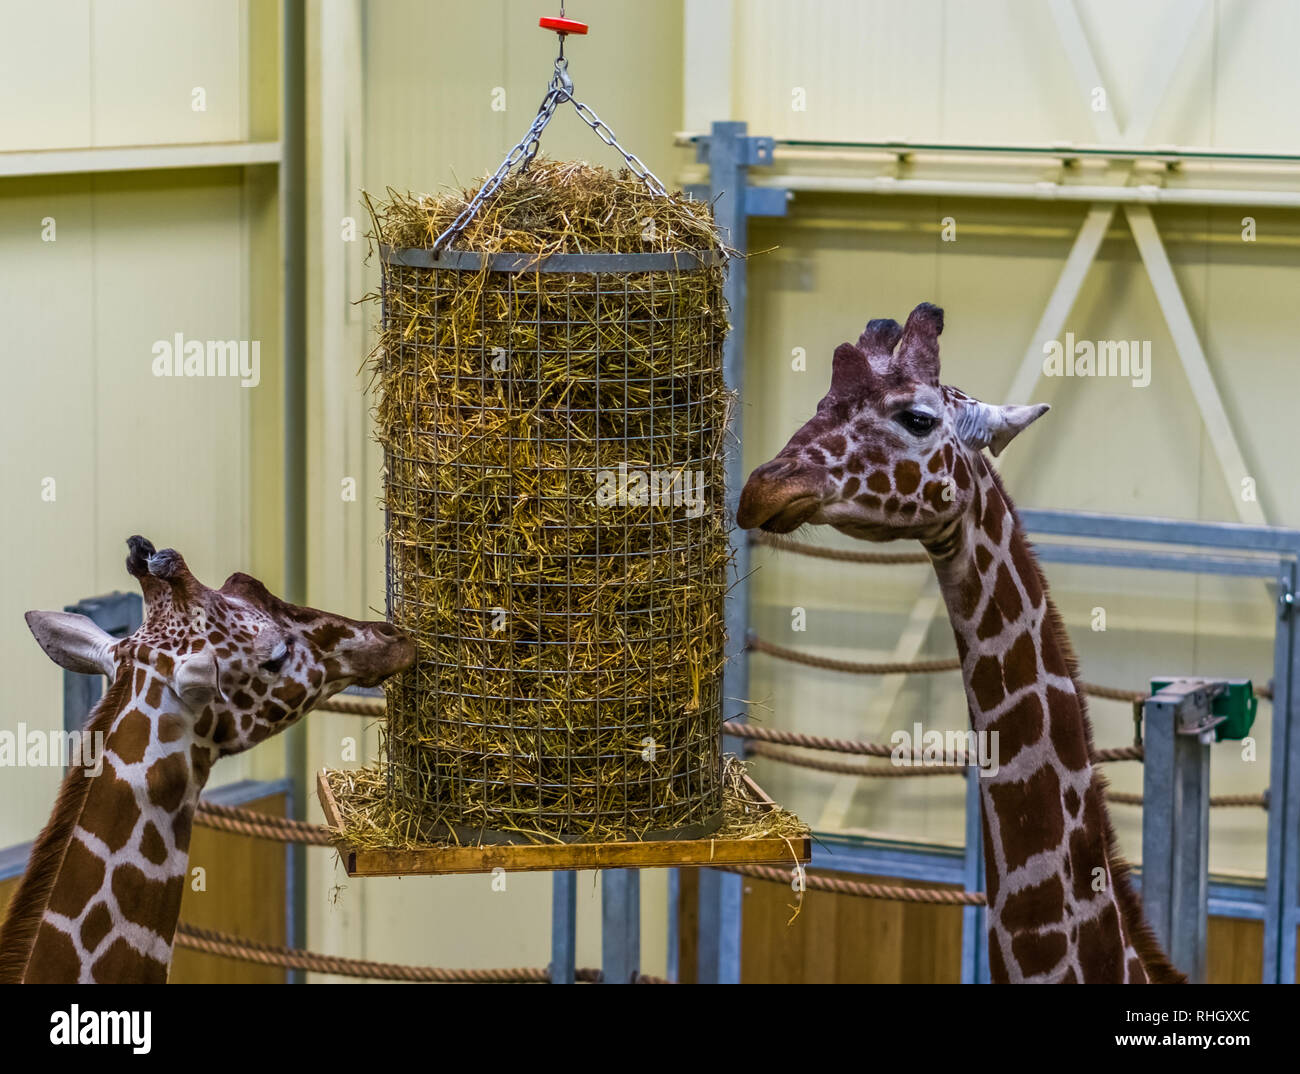 Due giraffe reticolate di mangiare da un cestello di fieno, lo zoo di animali di apparecchiature di alimentazione Foto Stock